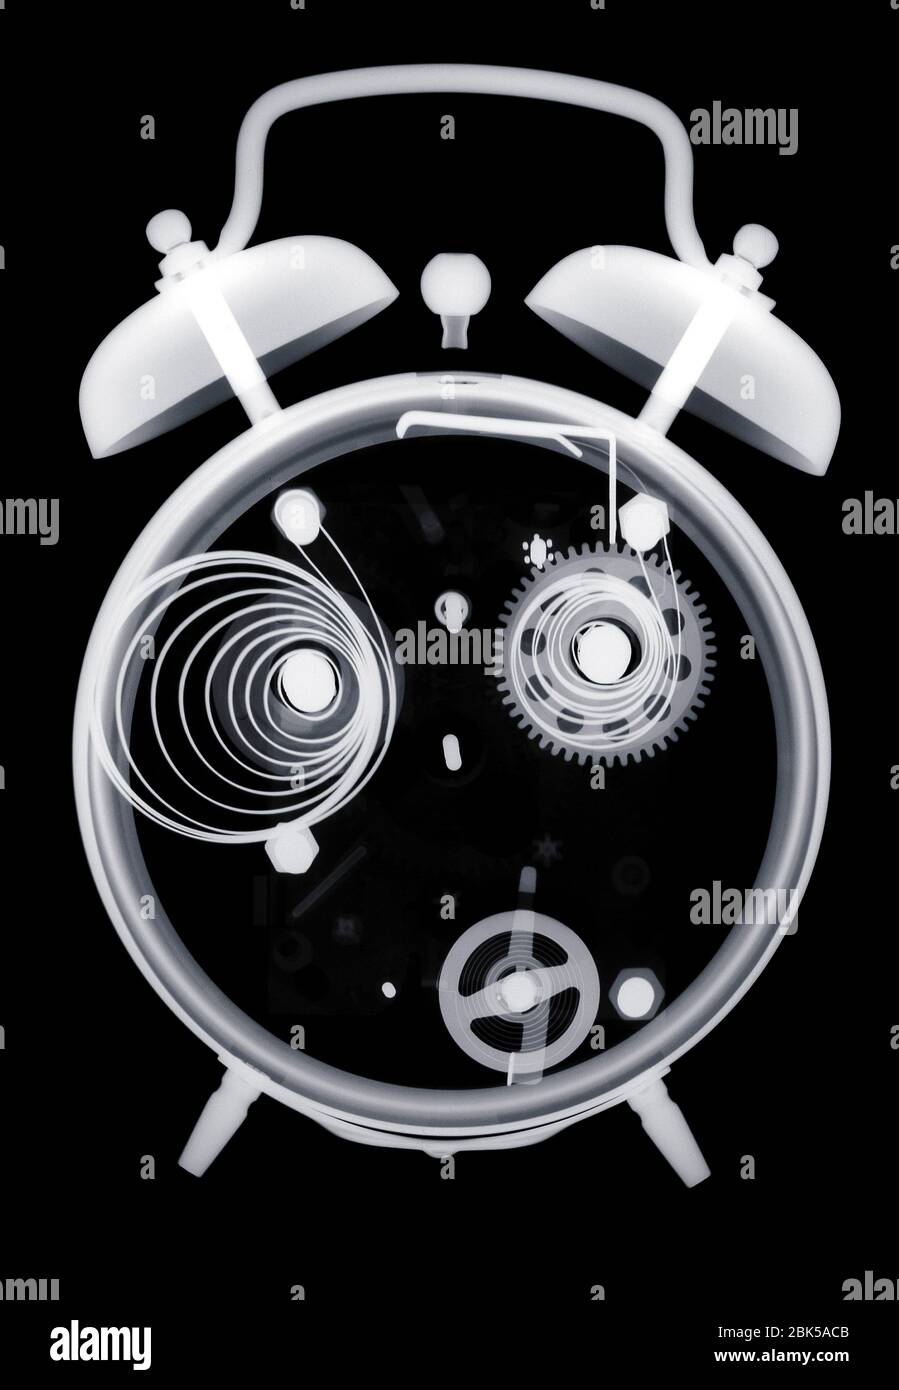 Alarm clock, X-ray. Stock Photo